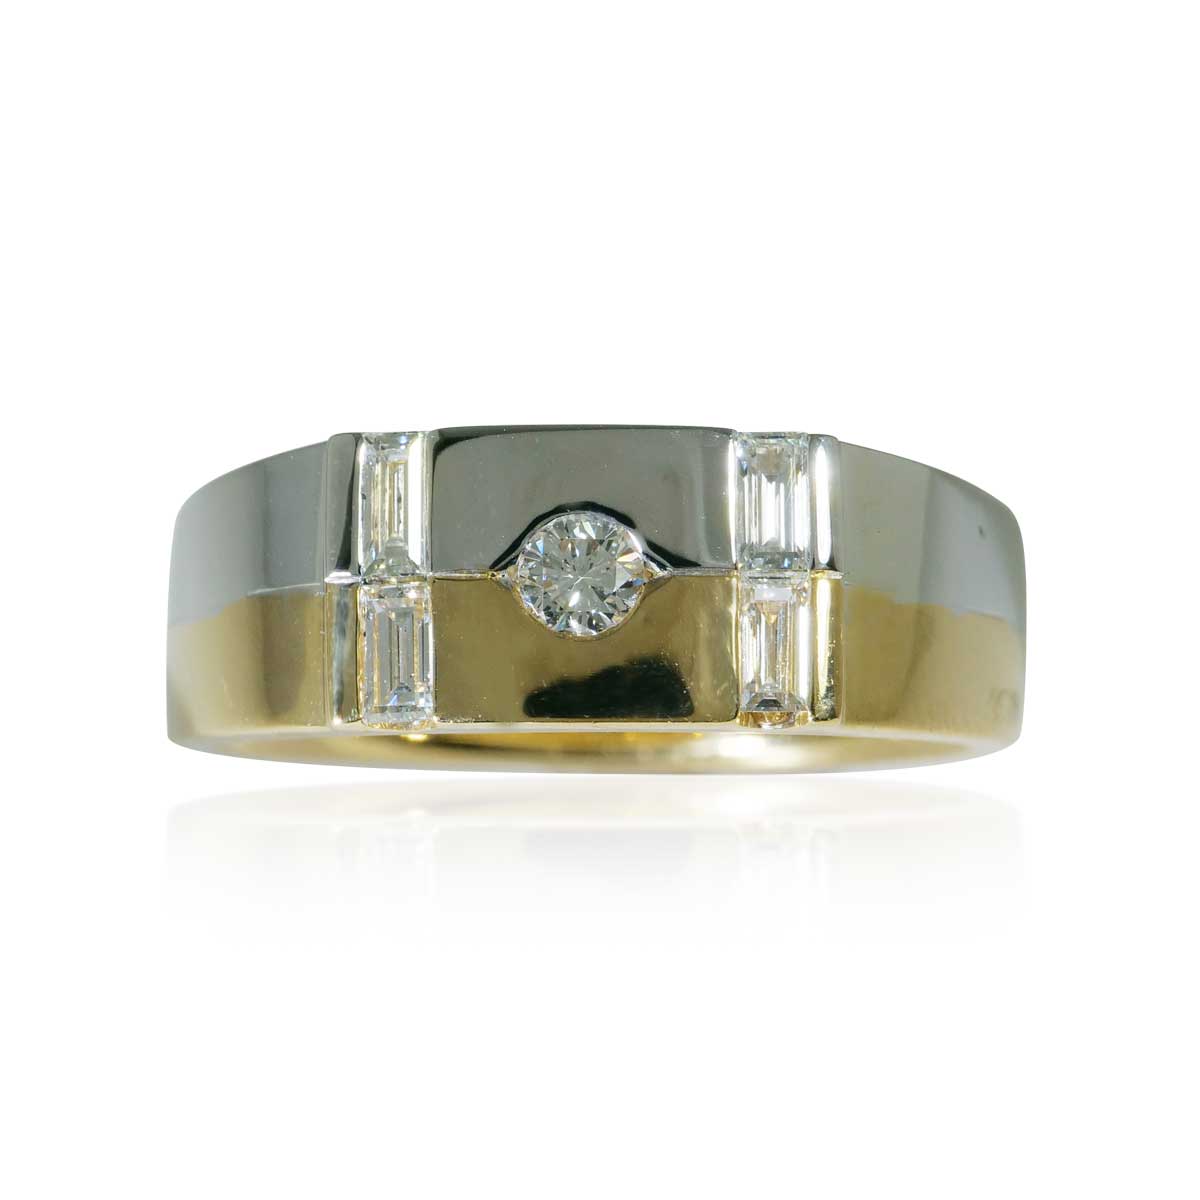 Brillant und Diamantbaguettes Ring zus 0,41ct in Gelb- und Weissgold 18 Kt